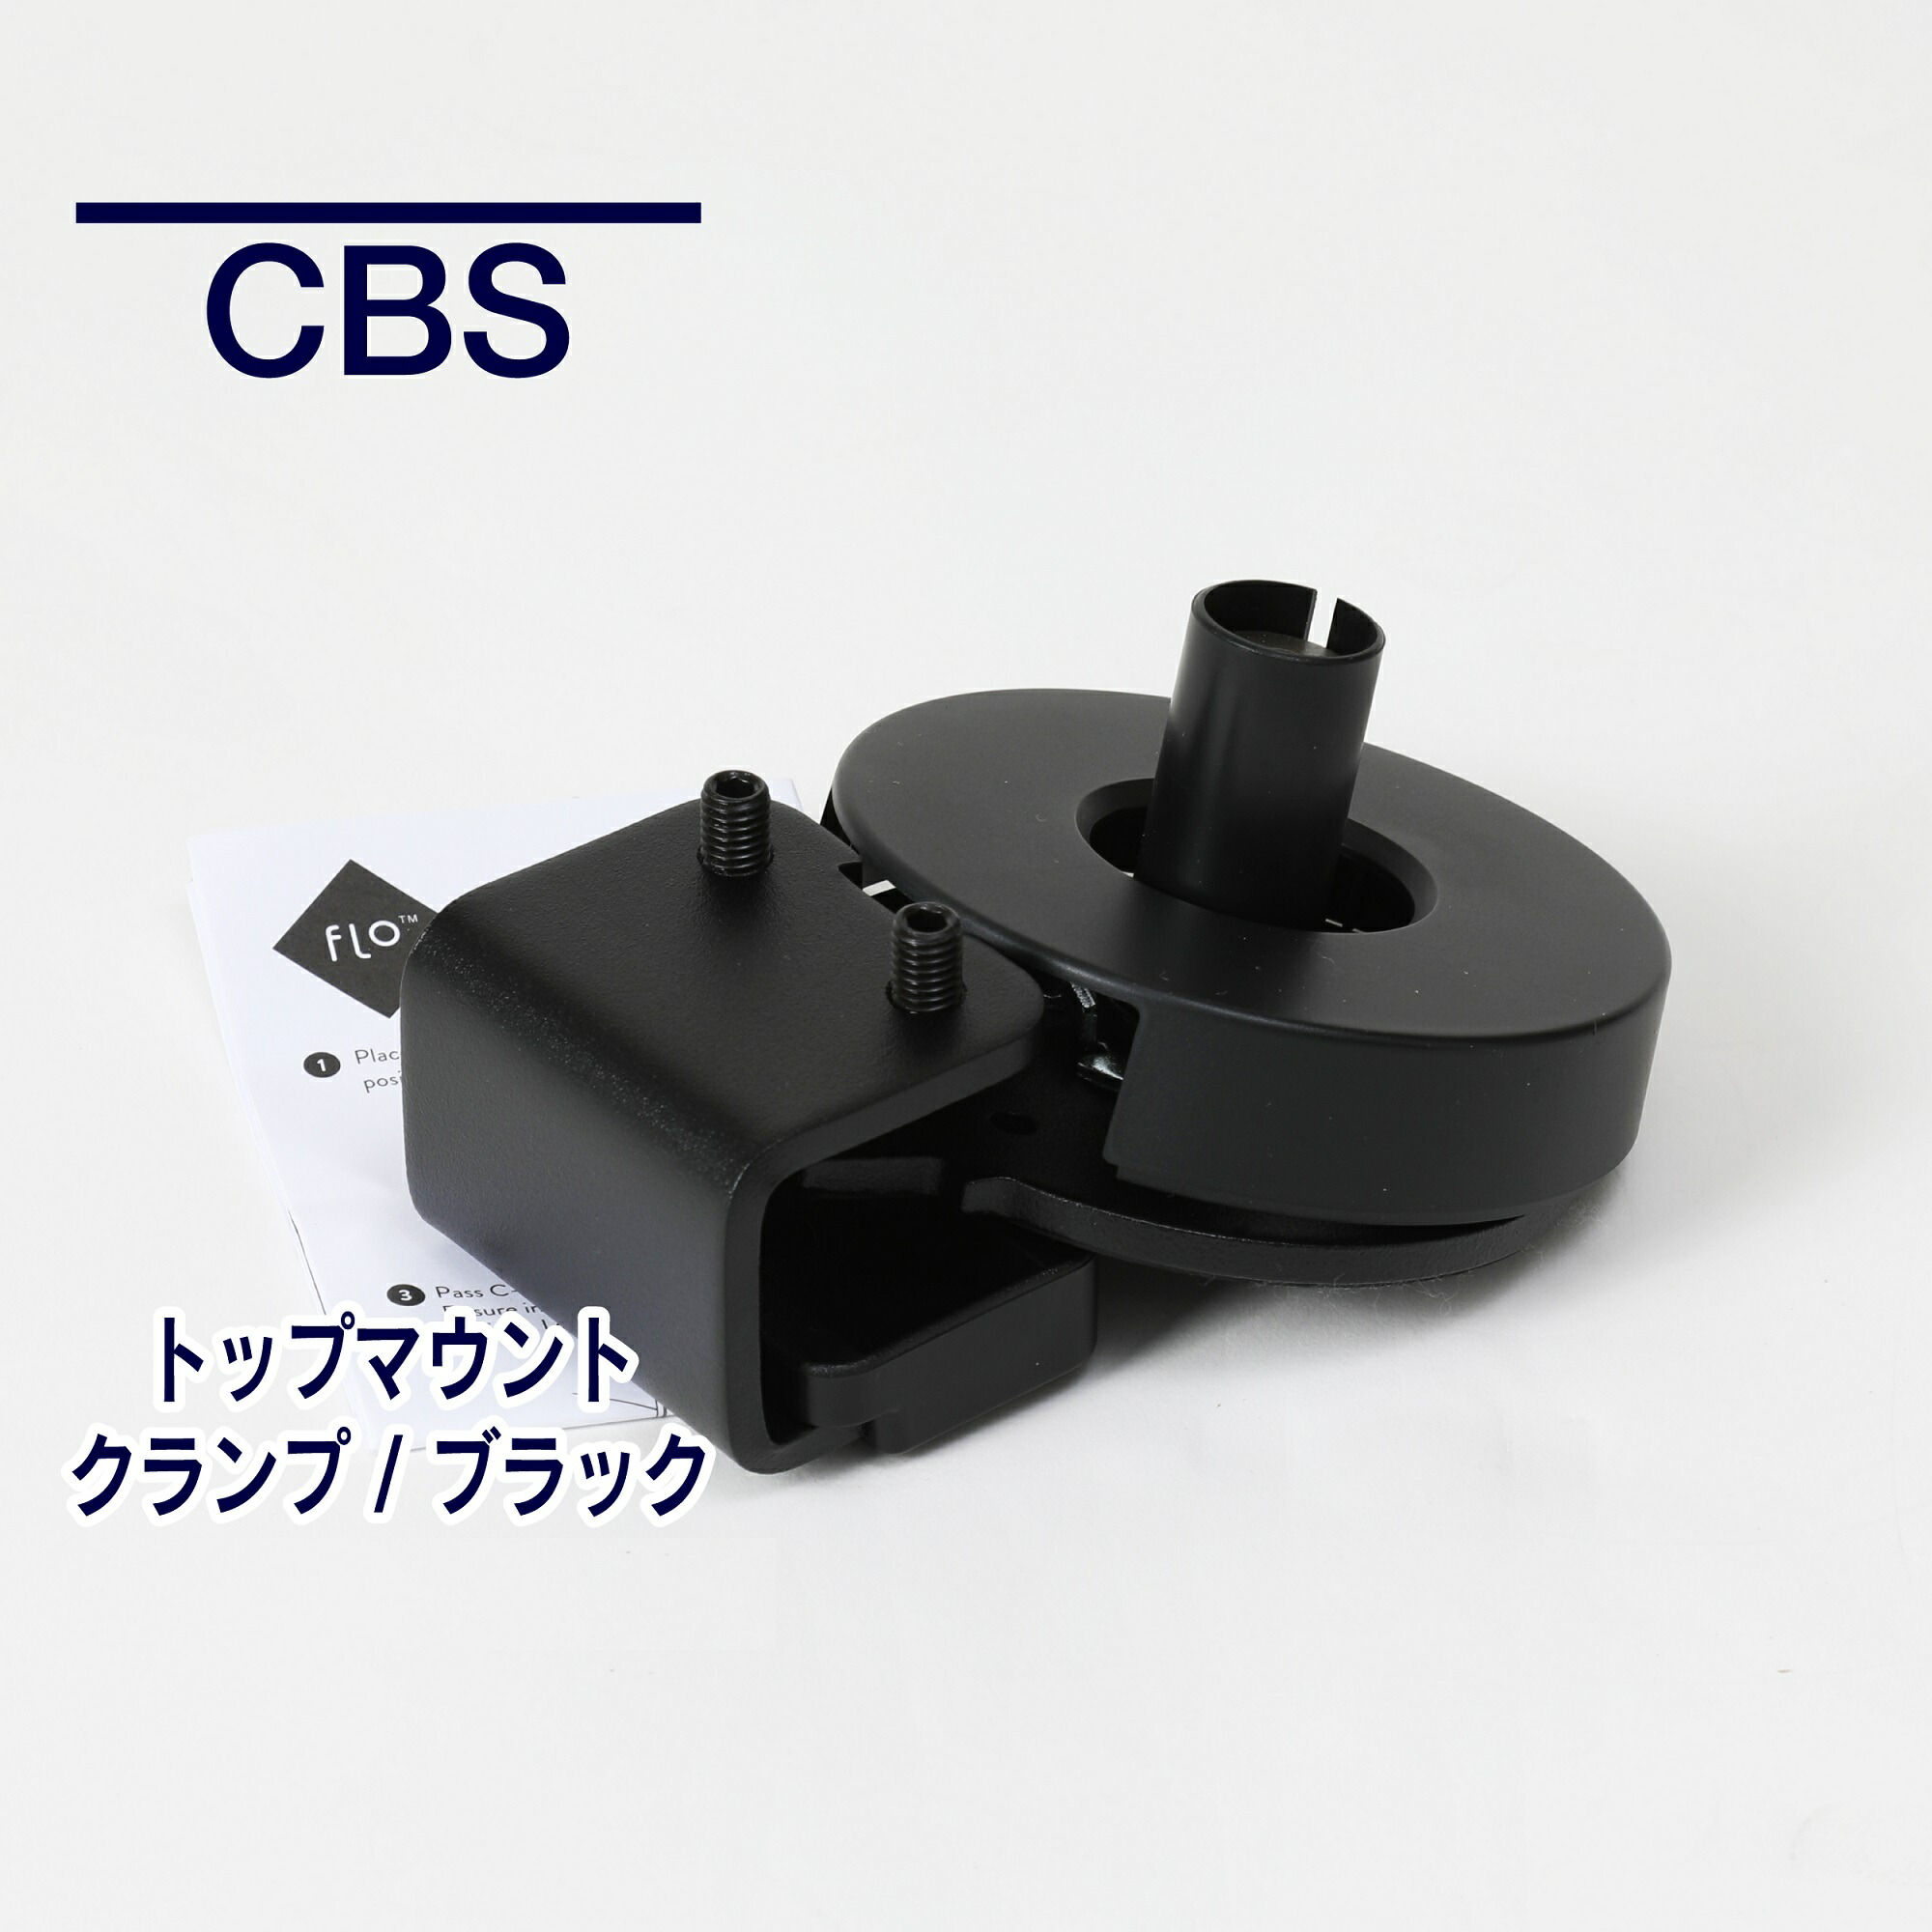 【楽天市場】【即納在庫有】CBS フロー/オーリン用 トップマウントクランプ ブラック 天板の厚み12-25mmに対応 MM-DYN/013